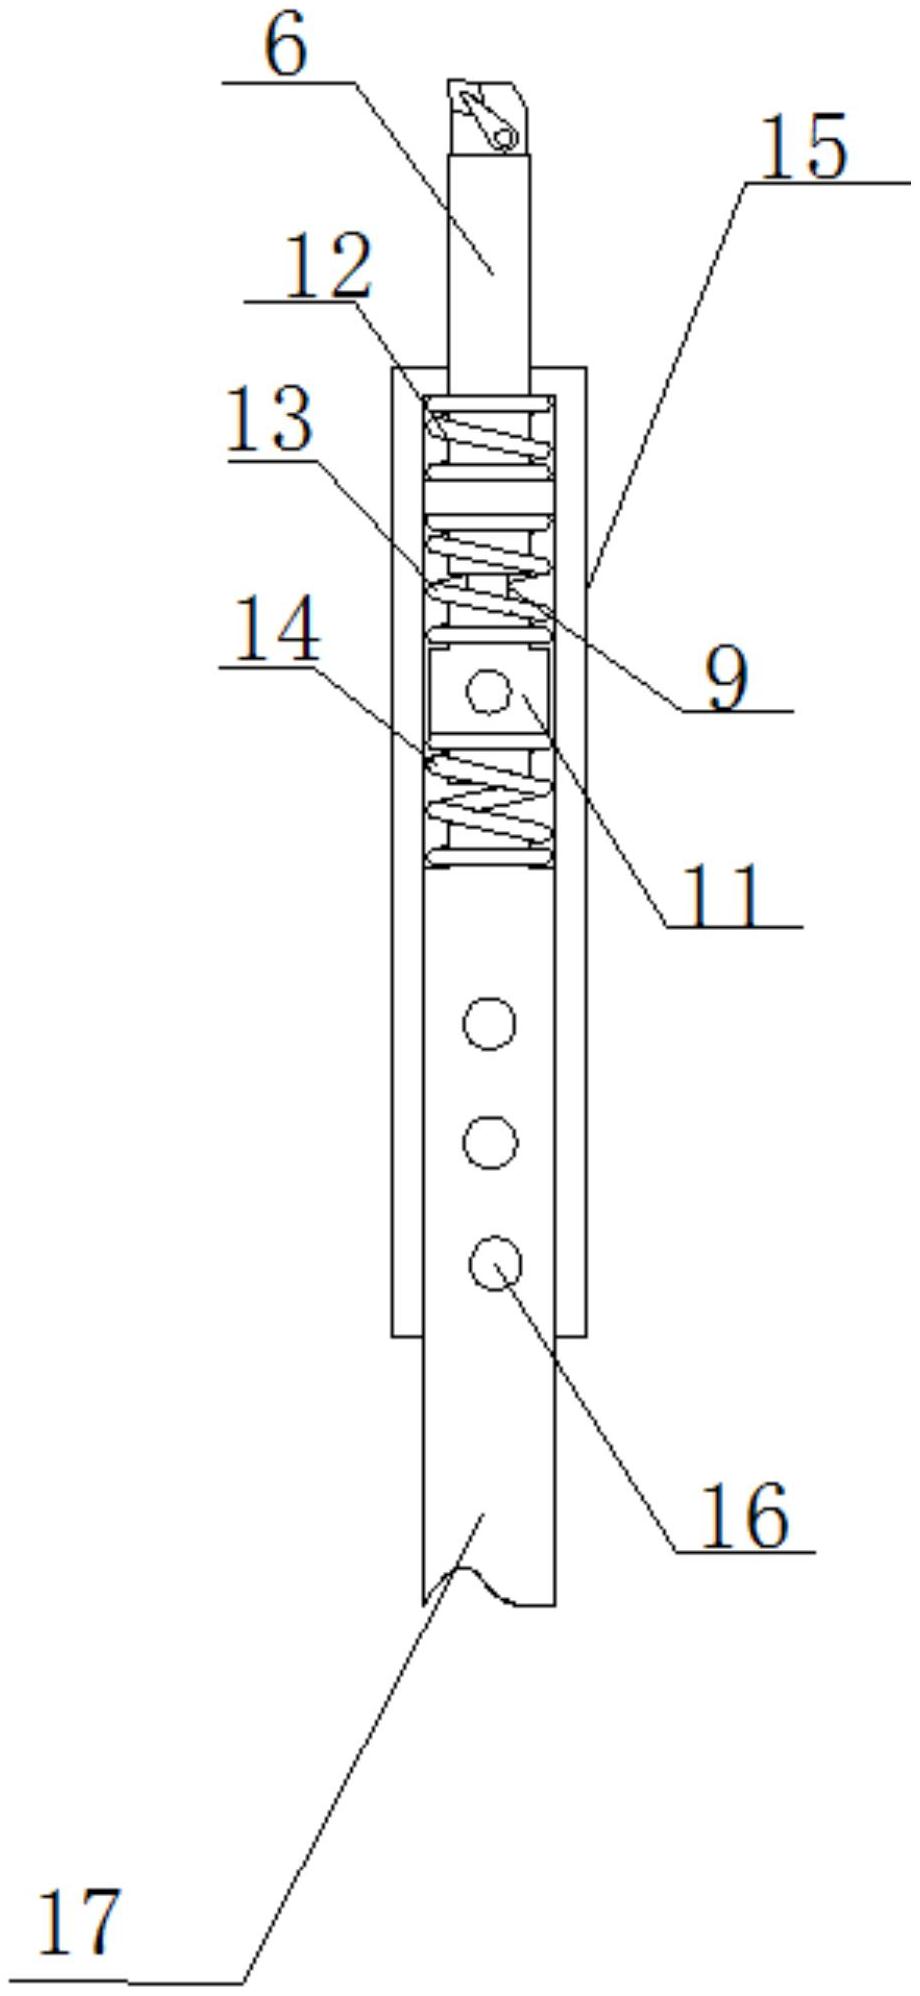 管道内连接碰撞调谐质量阻尼器,刀头与第一刀杆通过螺纹连接,且刀头的